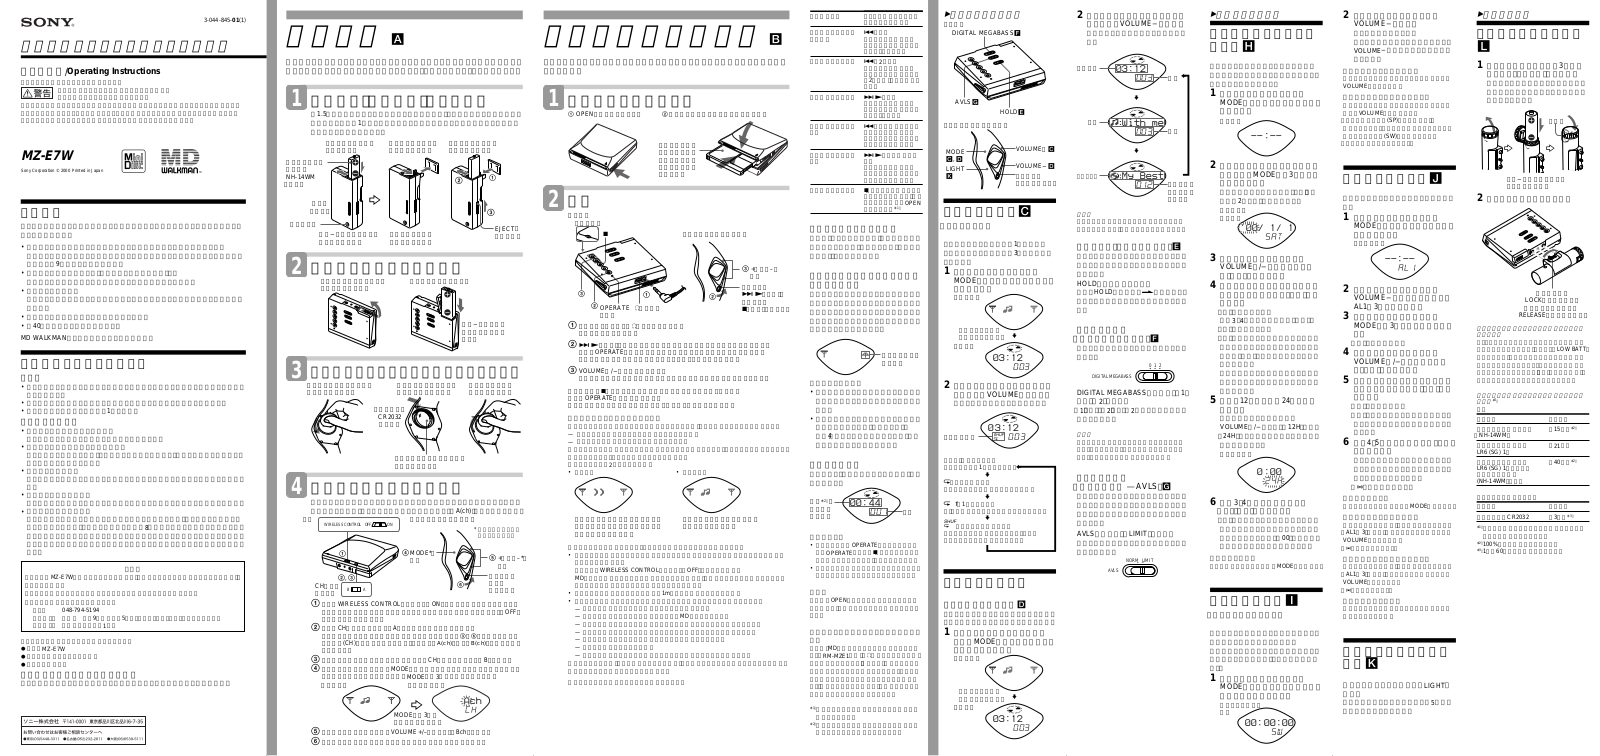 Sony VAIO VGN-SZ740EZ, VAIO VGN-SZ791N/X, VAIO VGN-SZ730E, VAIO VGN-SZ791N, VAIO VGN-SZ780 Operating Manual